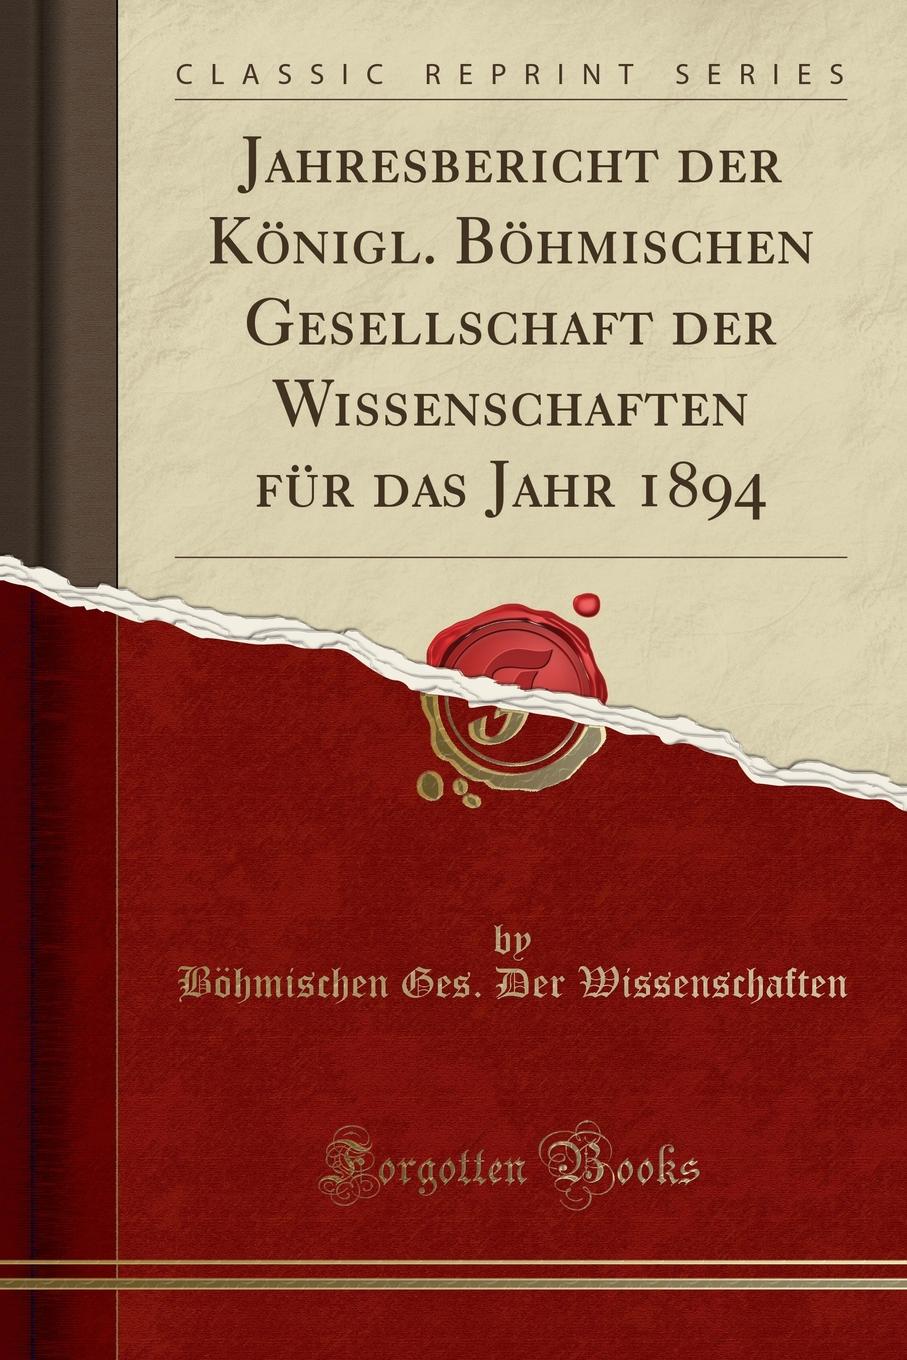 фото Jahresbericht der Konigl. Bohmischen Gesellschaft der Wissenschaften fur das Jahr 1894 (Classic Reprint)